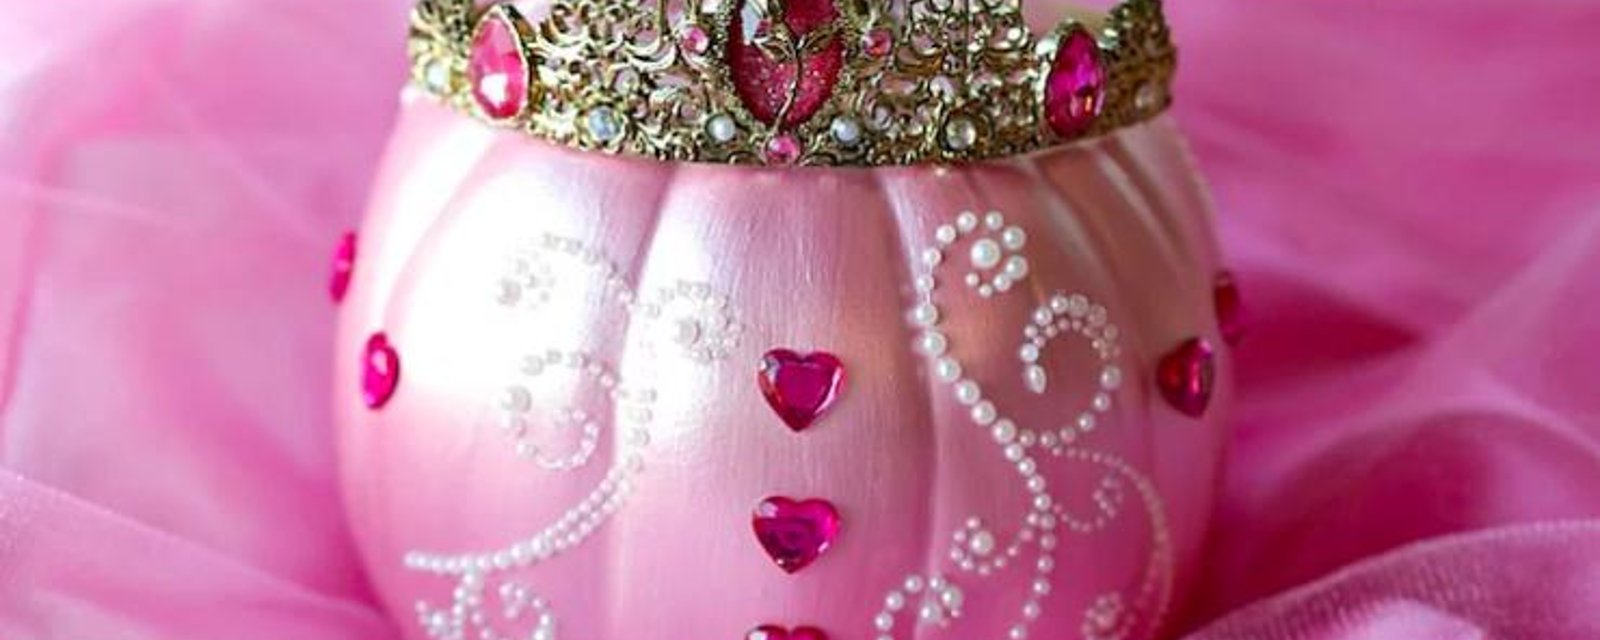 Les citrouilles décorées en princesses sont la tendance de l'heure pour l'Halloween cette année